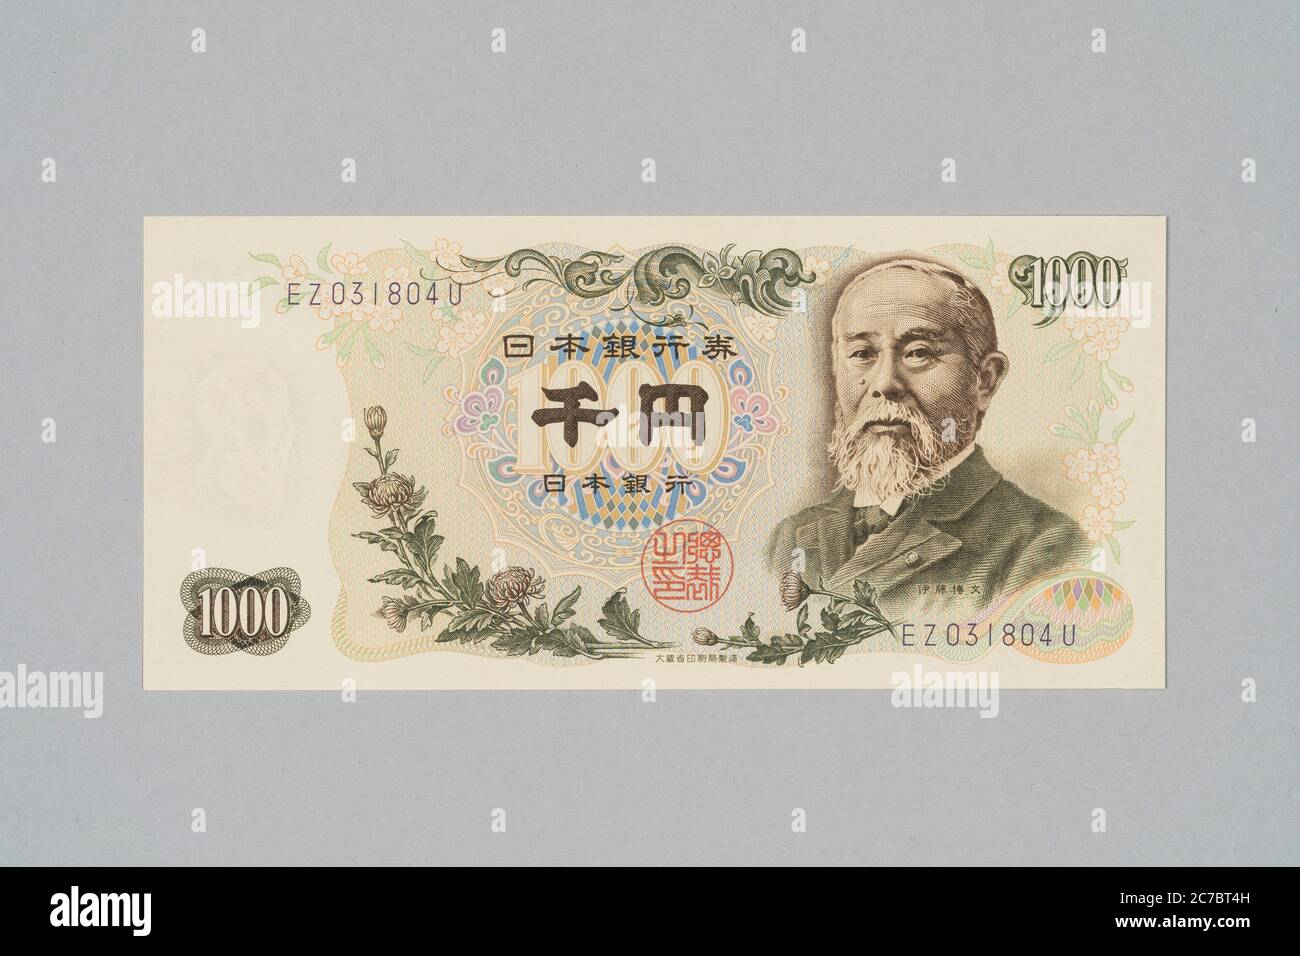 Billet de banque japonais 1000 yens, Hiropumi Ito design, Collection privée Banque D'Images